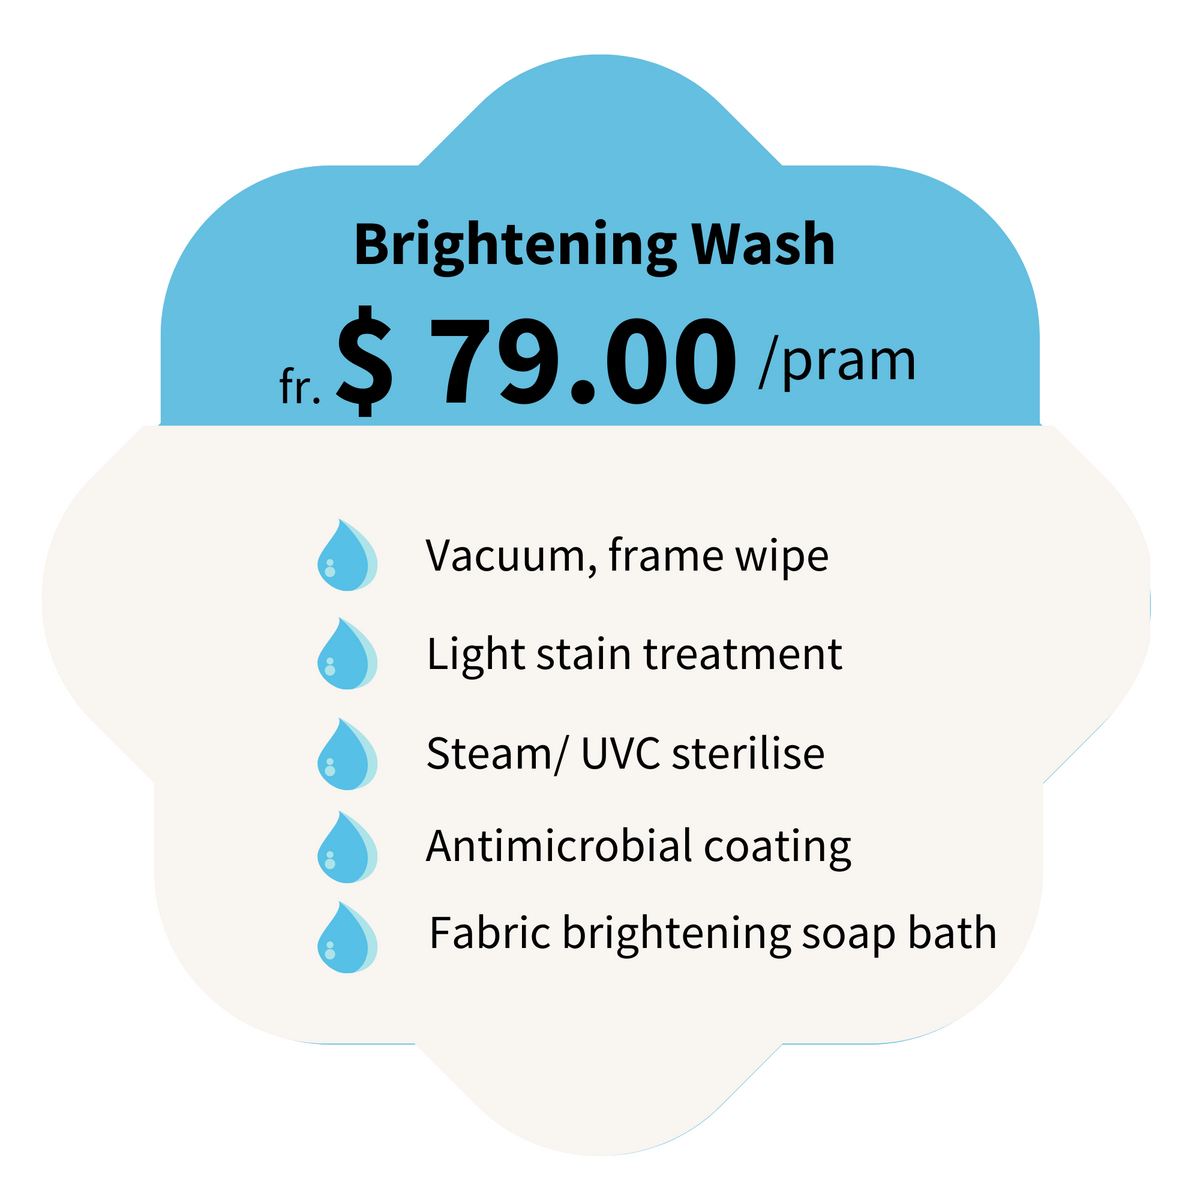 Brightening wash